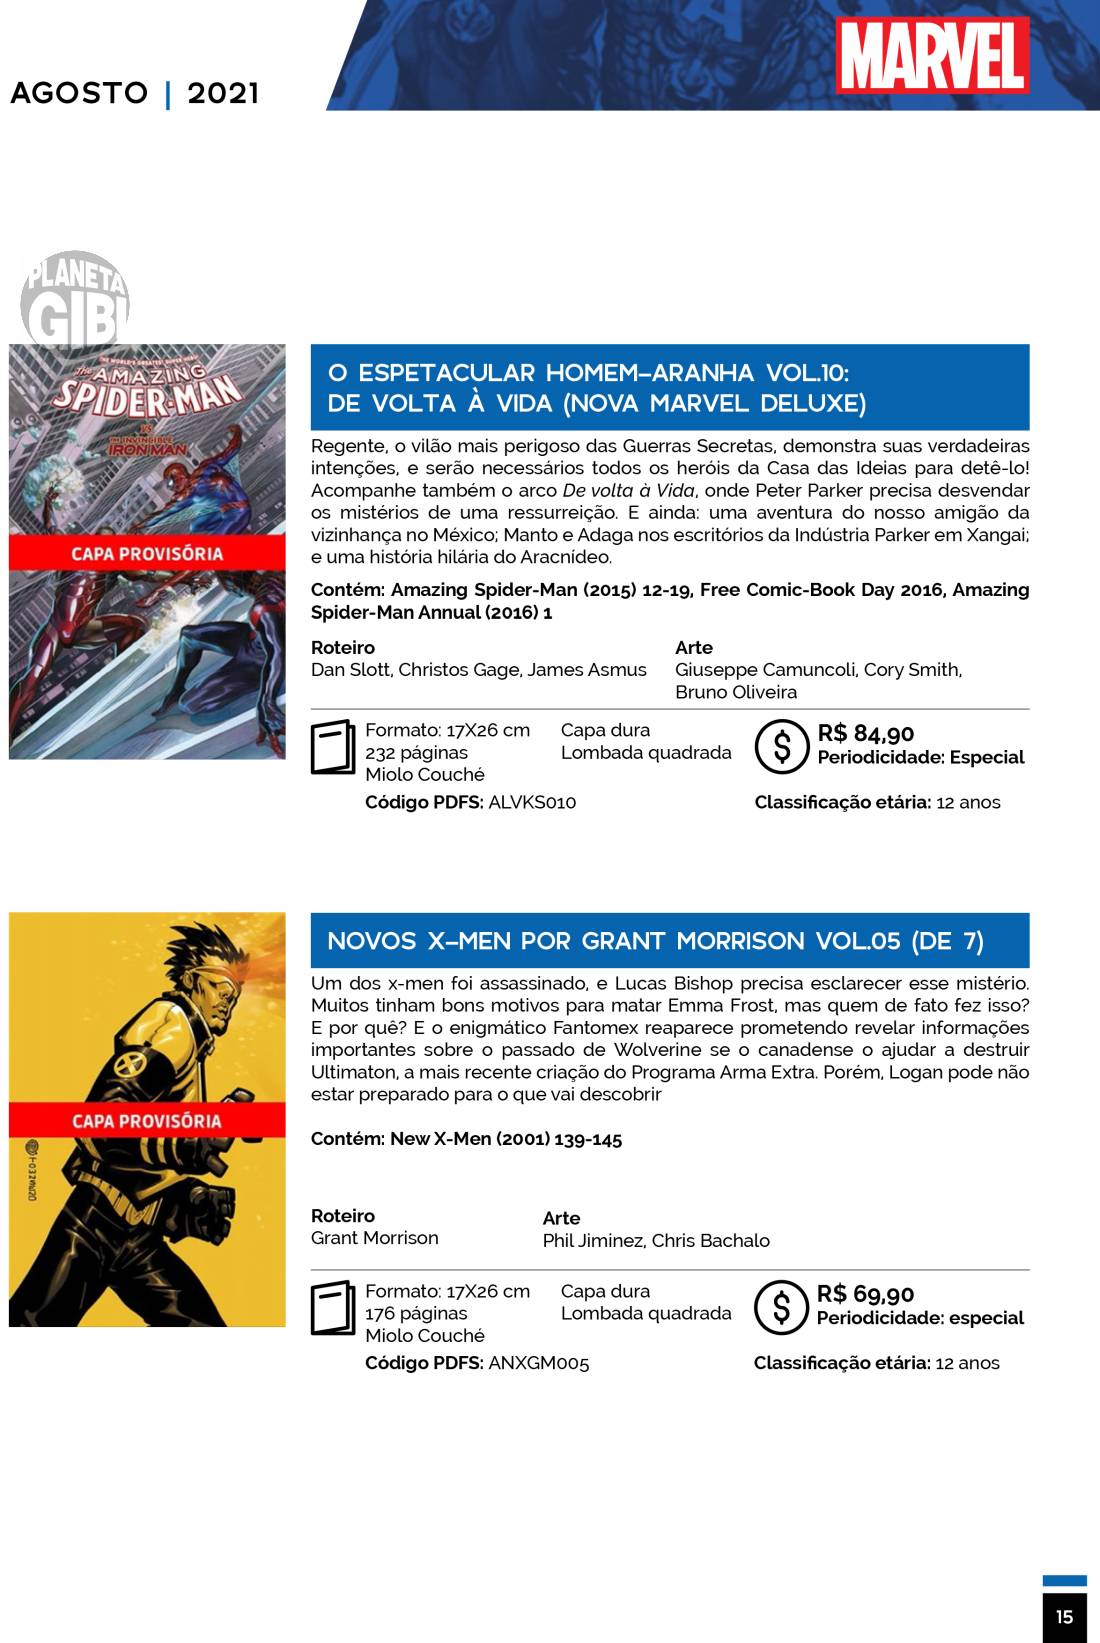 13 - Checklist Marvel/Panini (Julho/2020 - pág.09) - Página 9 Catalogo-Julho-Agosto-15